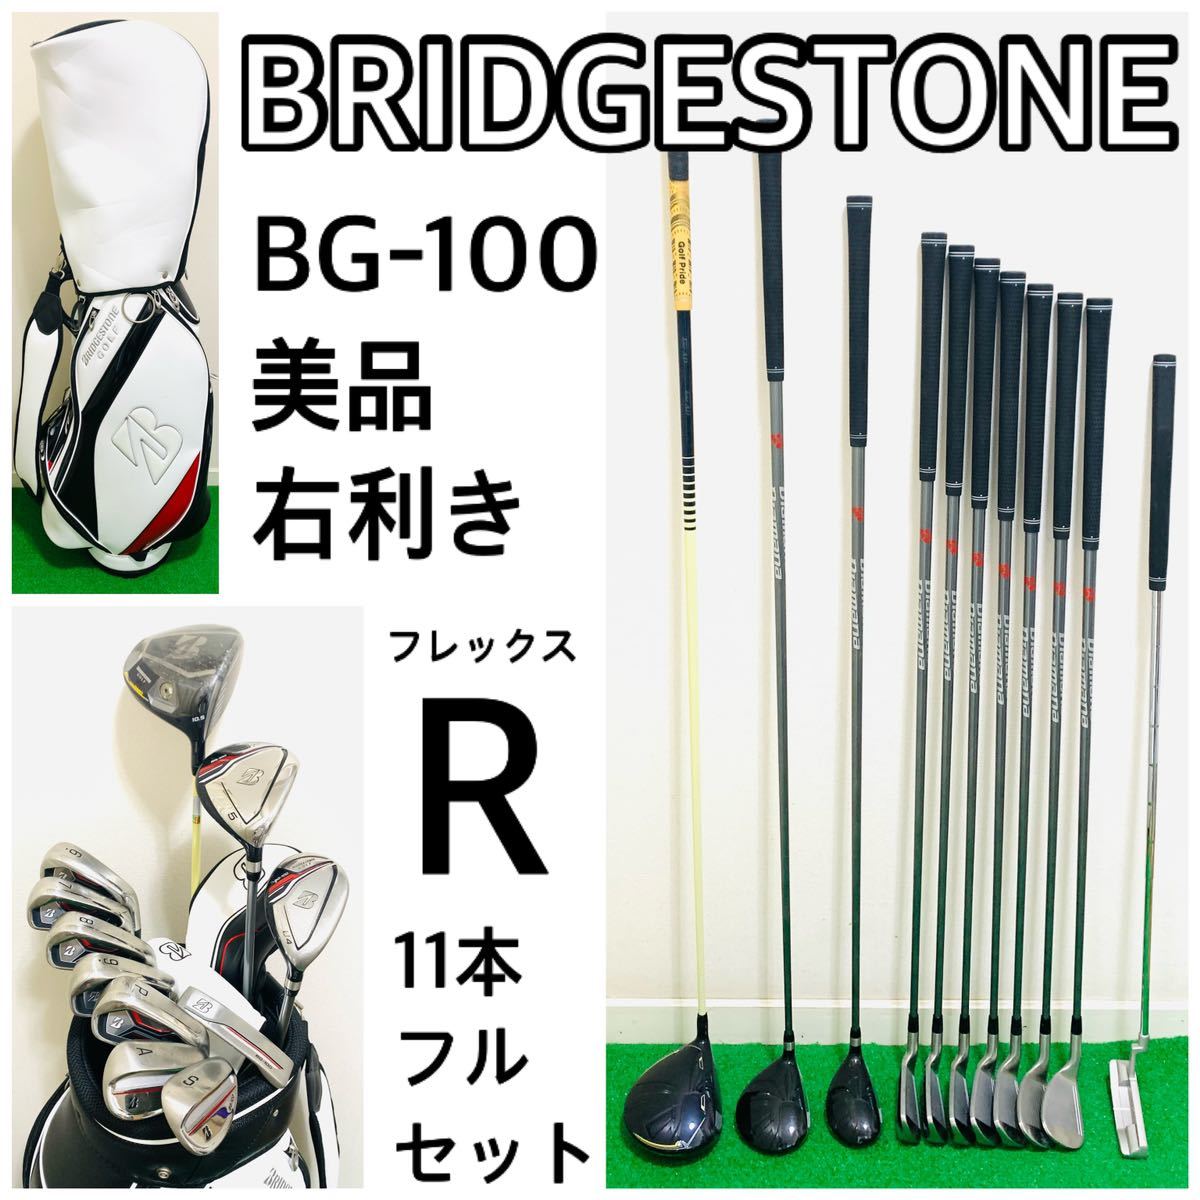 5738 美品 BRIDGESTONE BG-100 ゴルフクラブフルセット フレックスR 11